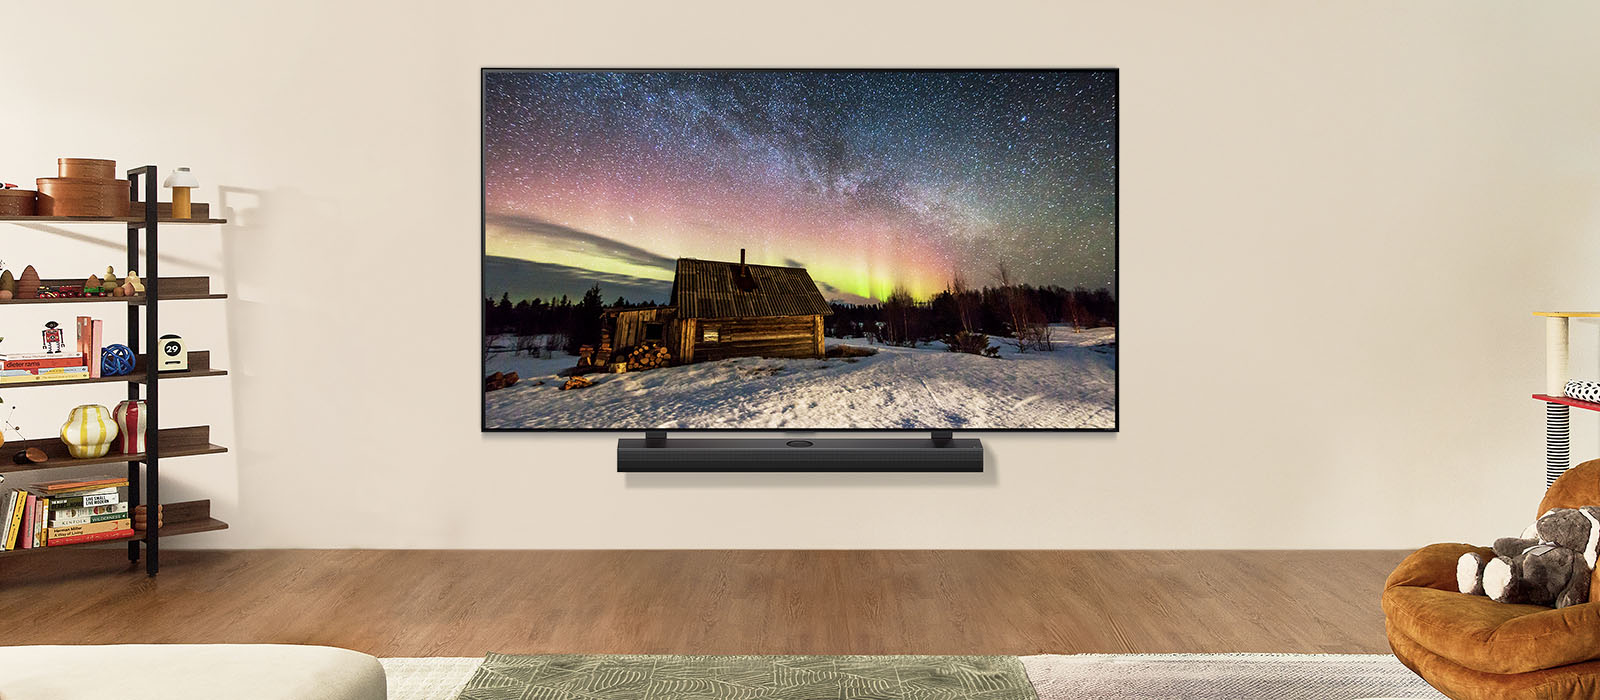 LG-televisio ja LG Soundbar modernissa olohuoneessa päivällä. Näytöllä kuva revontulista ihanteellisilla kirkkaustasoilla.